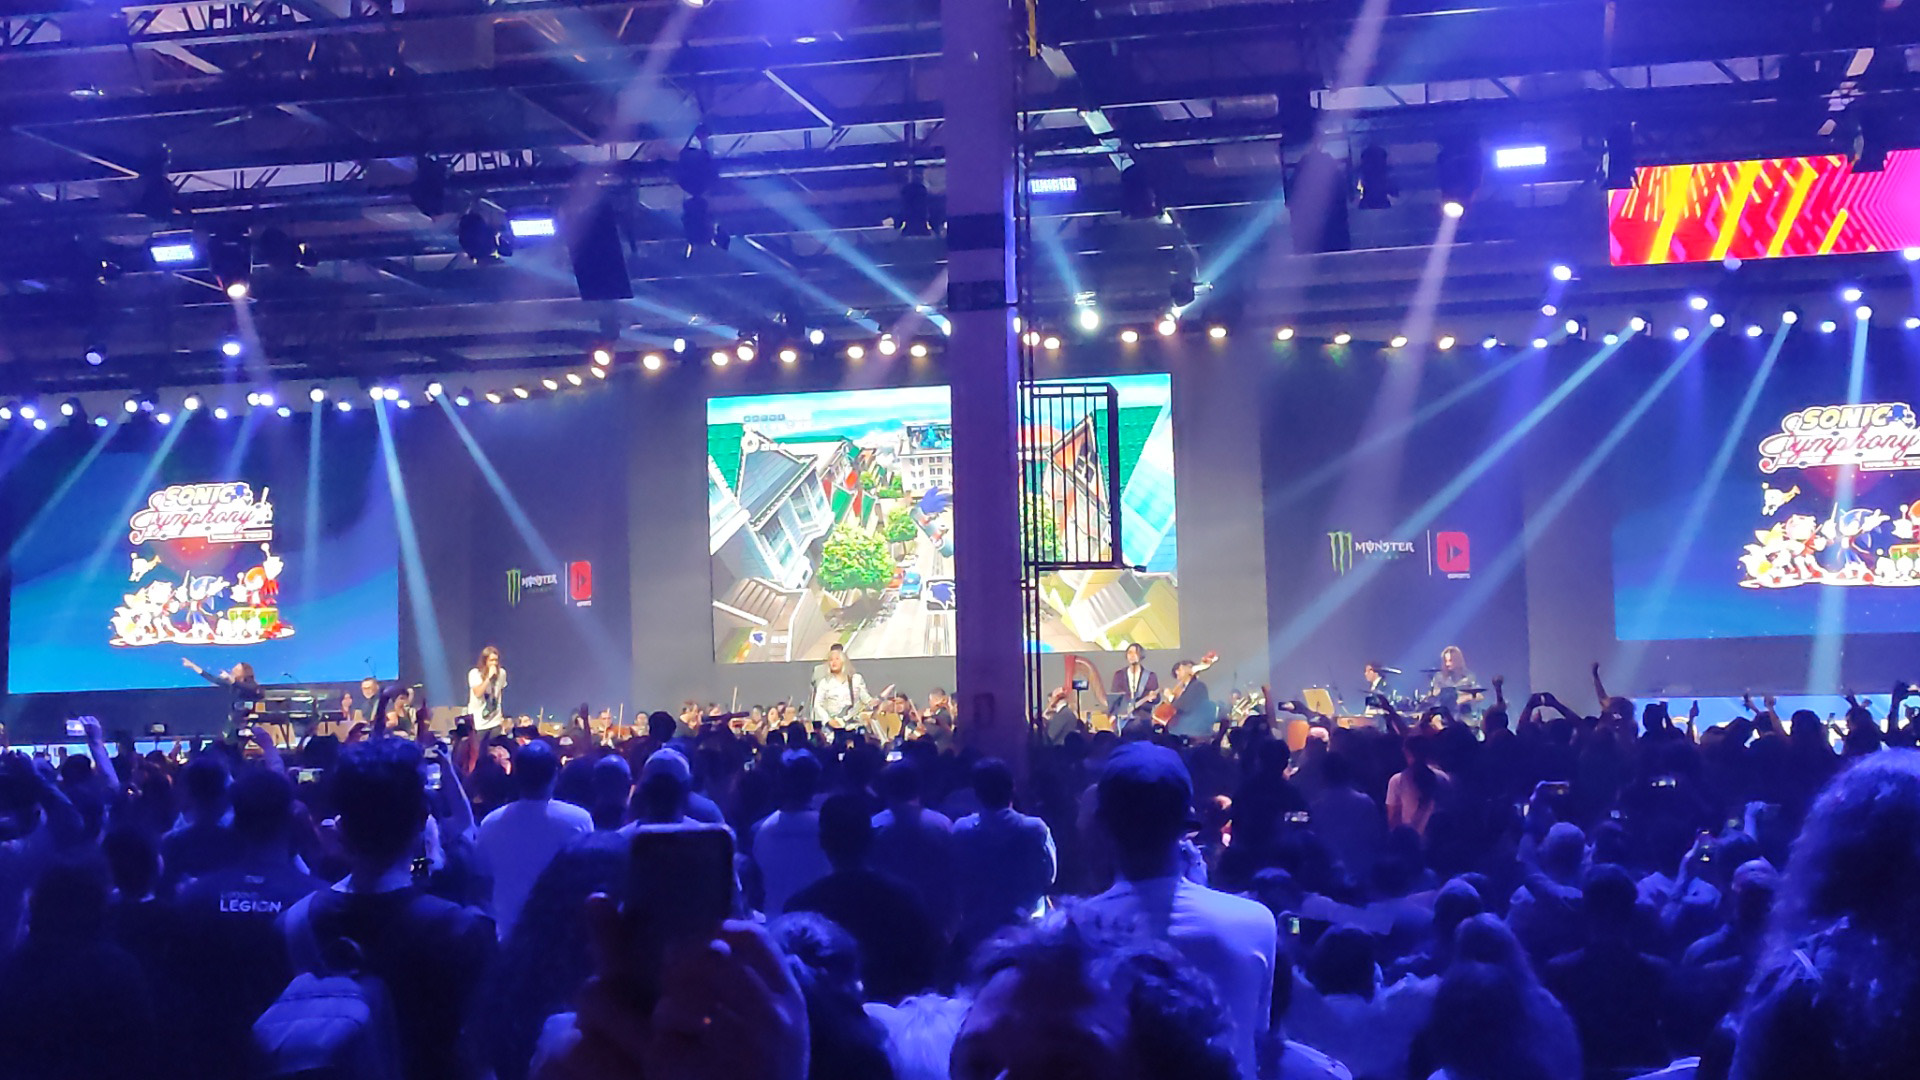 Brasil Game Show 2023: Sonic Symphony tem participação confirmada no evento  - GameBlast